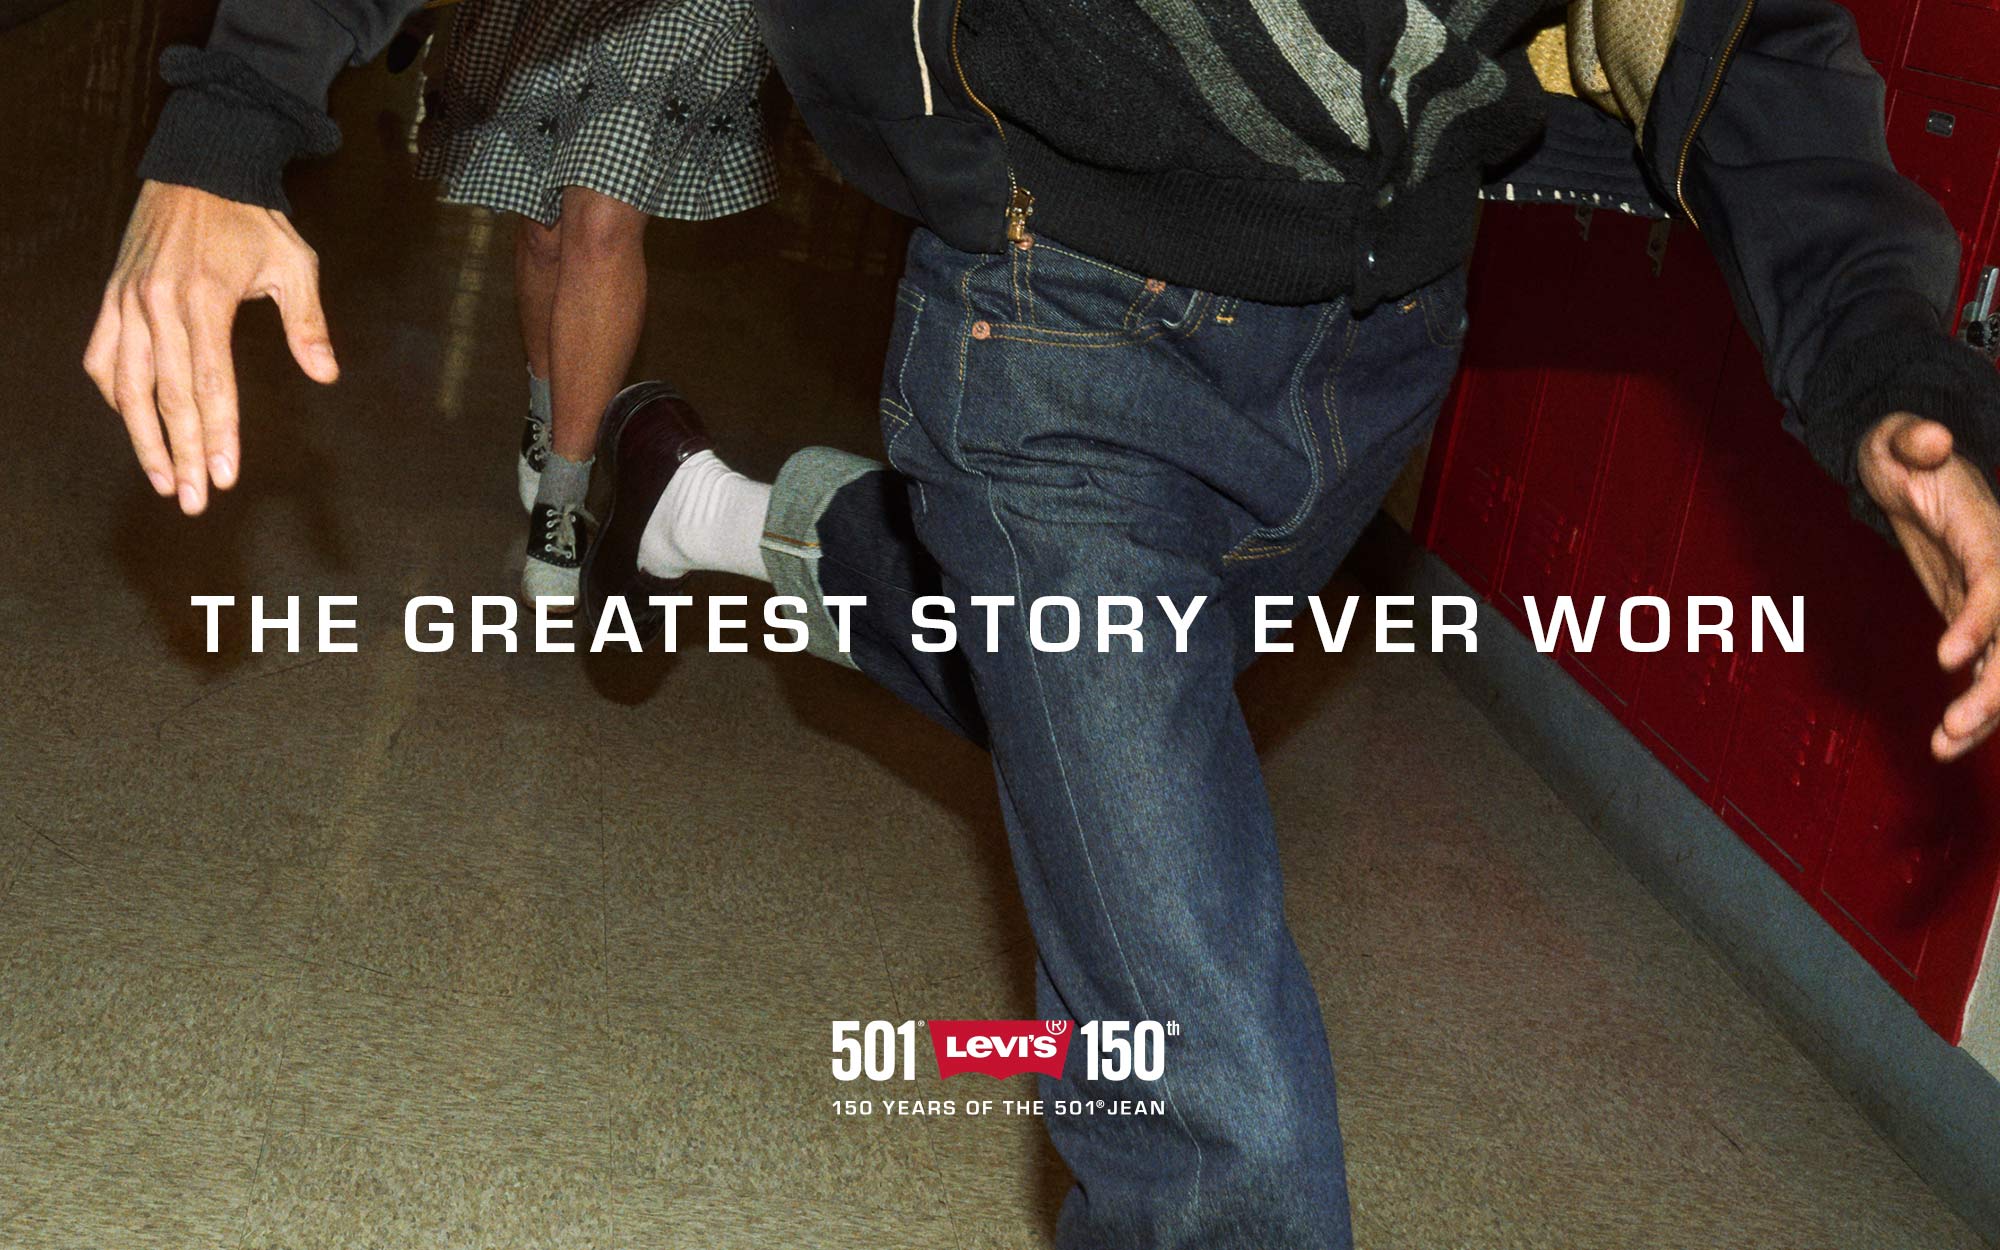 誕生 150 周年的 501 牛仔褲系列 - Levi's 香港